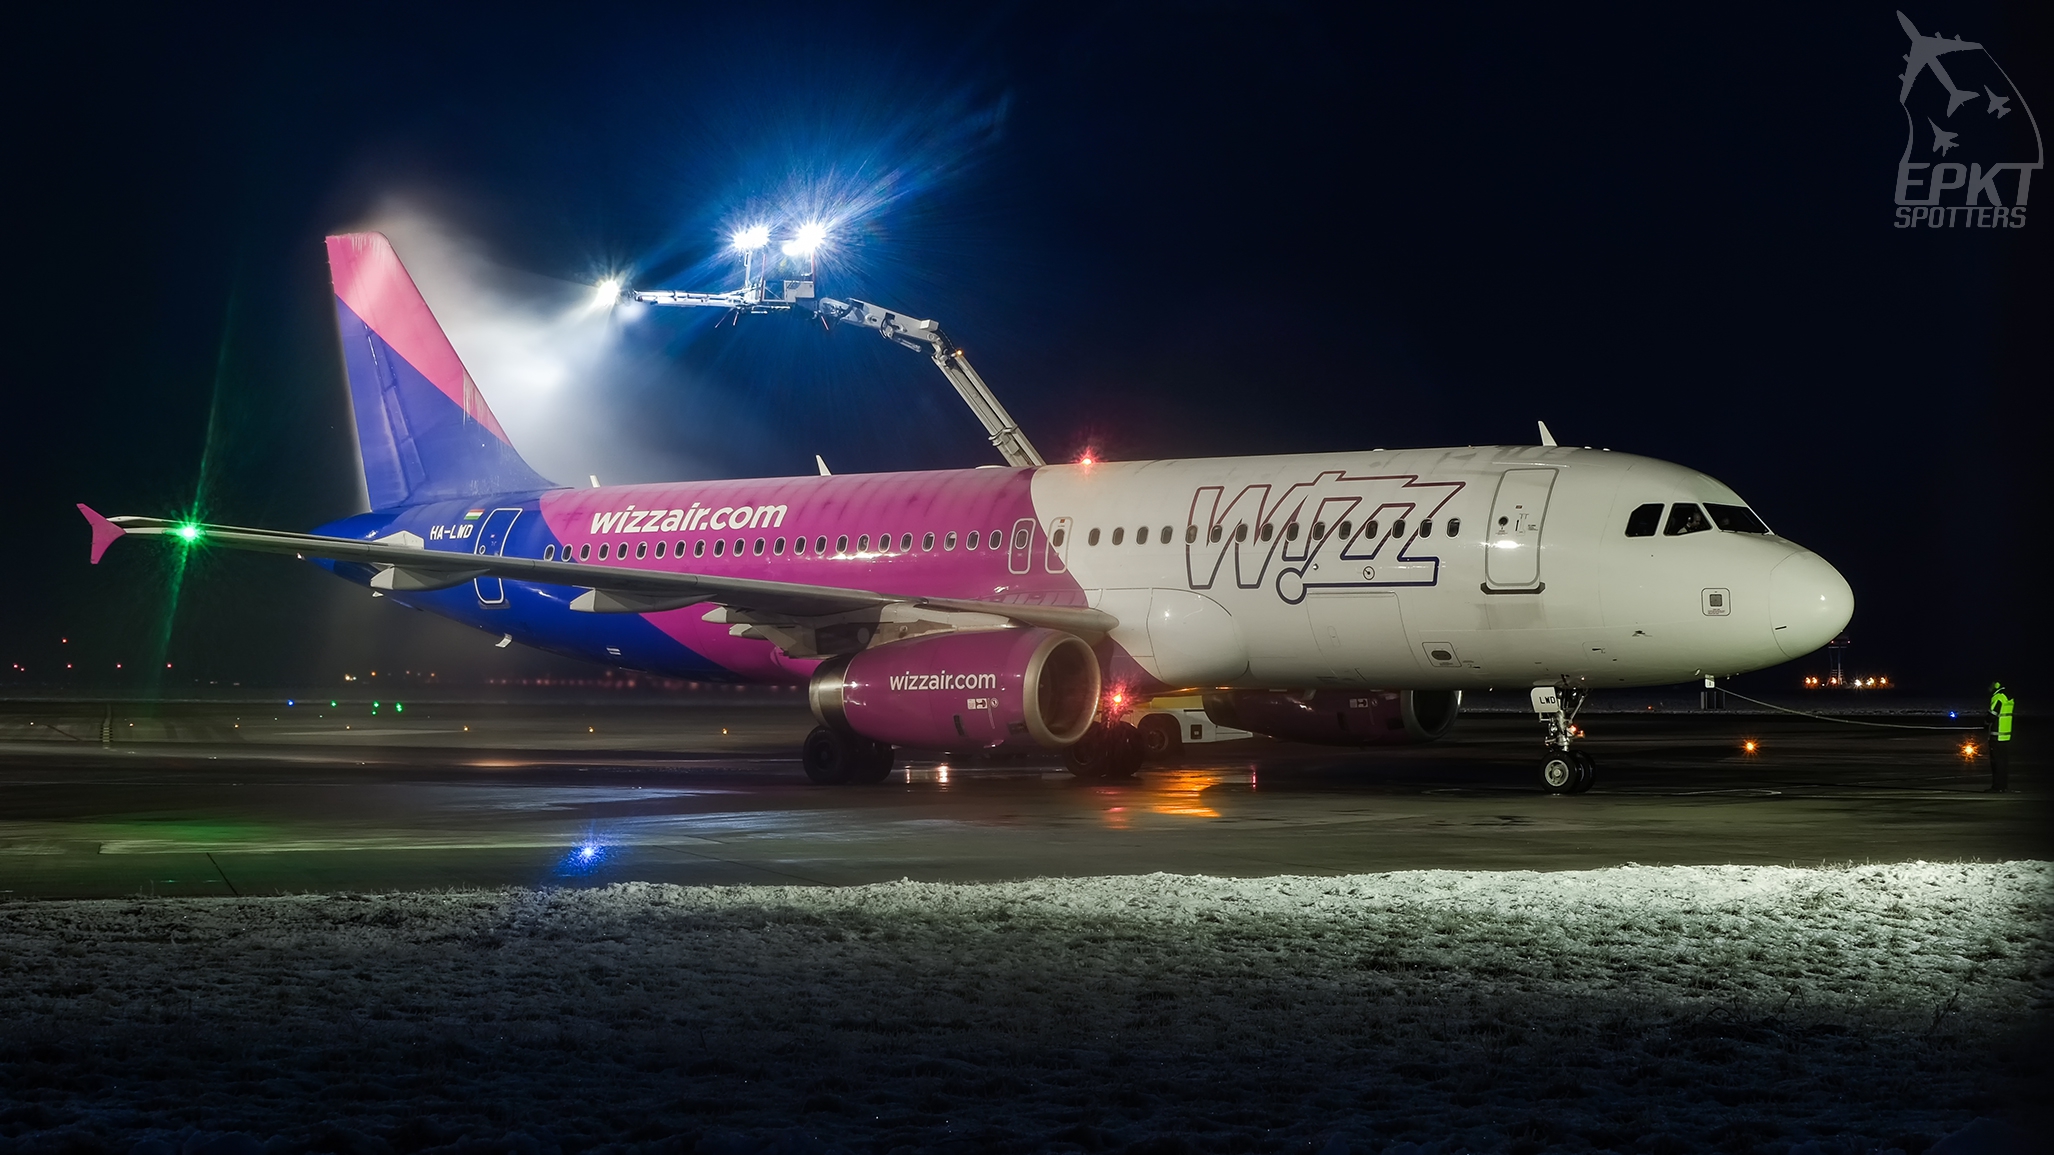 HA-LWD - Airbus A320 -232 (Wizz Air) / Pyrzowice - Katowice Poland [EPKT/KTW]